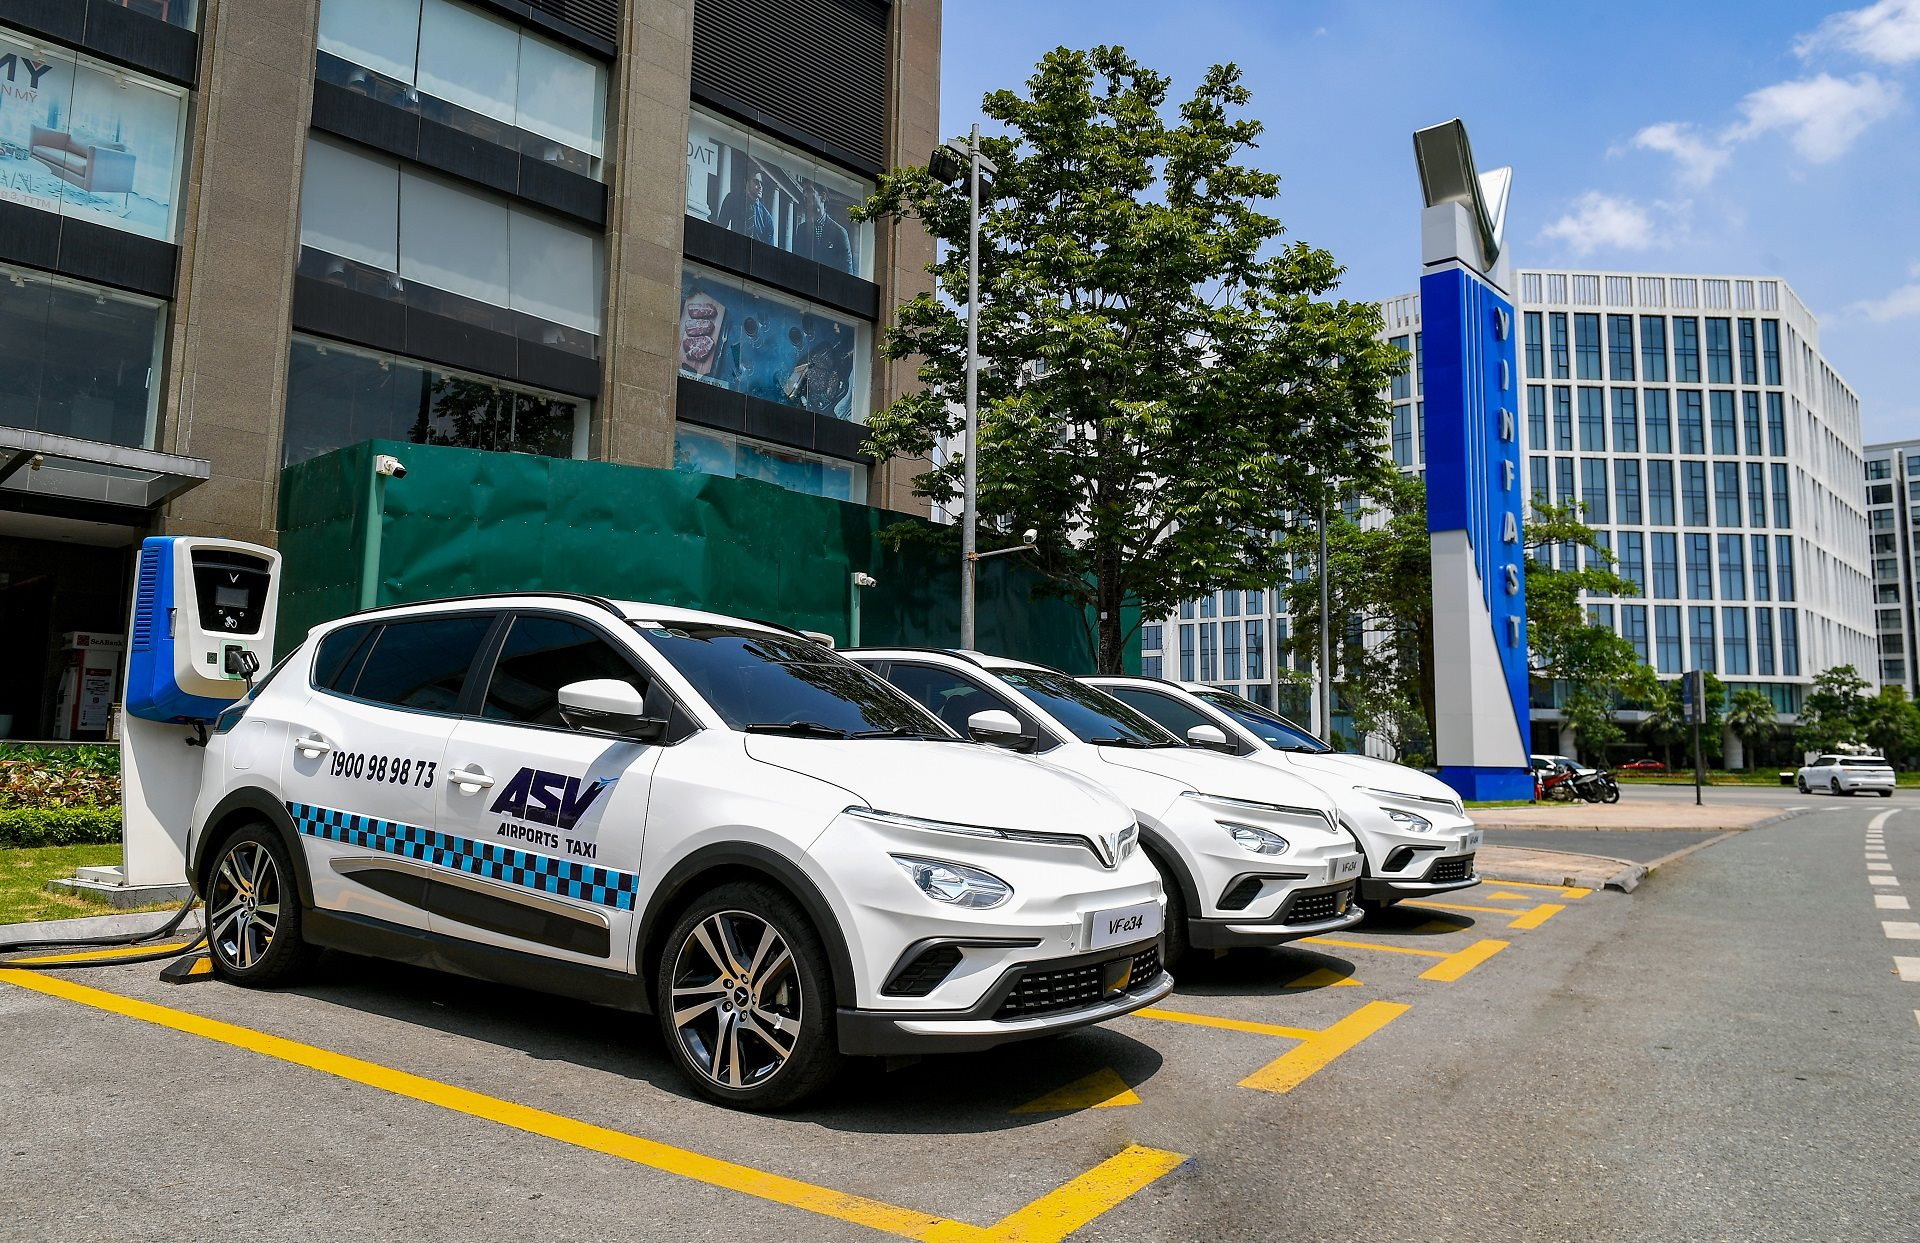 ASV Airports Taxi thuê 500 ô tô điện VinFast từ GMS, sẽ có taxi điện đưa đón khách đi Nội Bài, Tân Sơn Nhất - Ảnh 2.